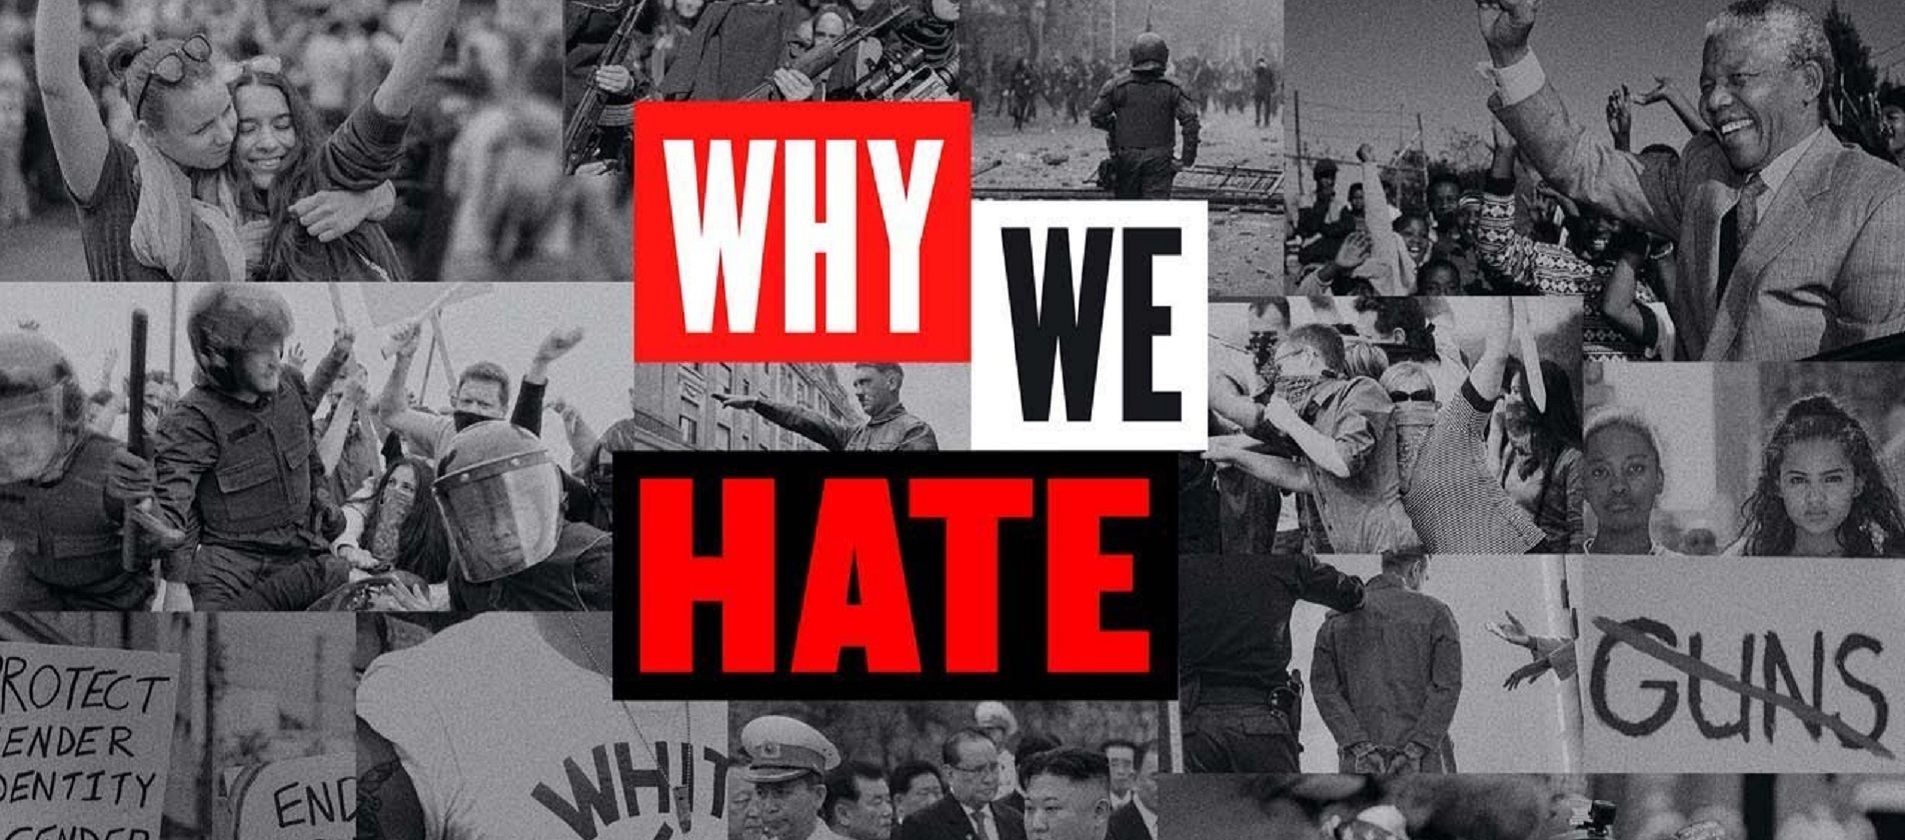 ¿Por qué odiamos?